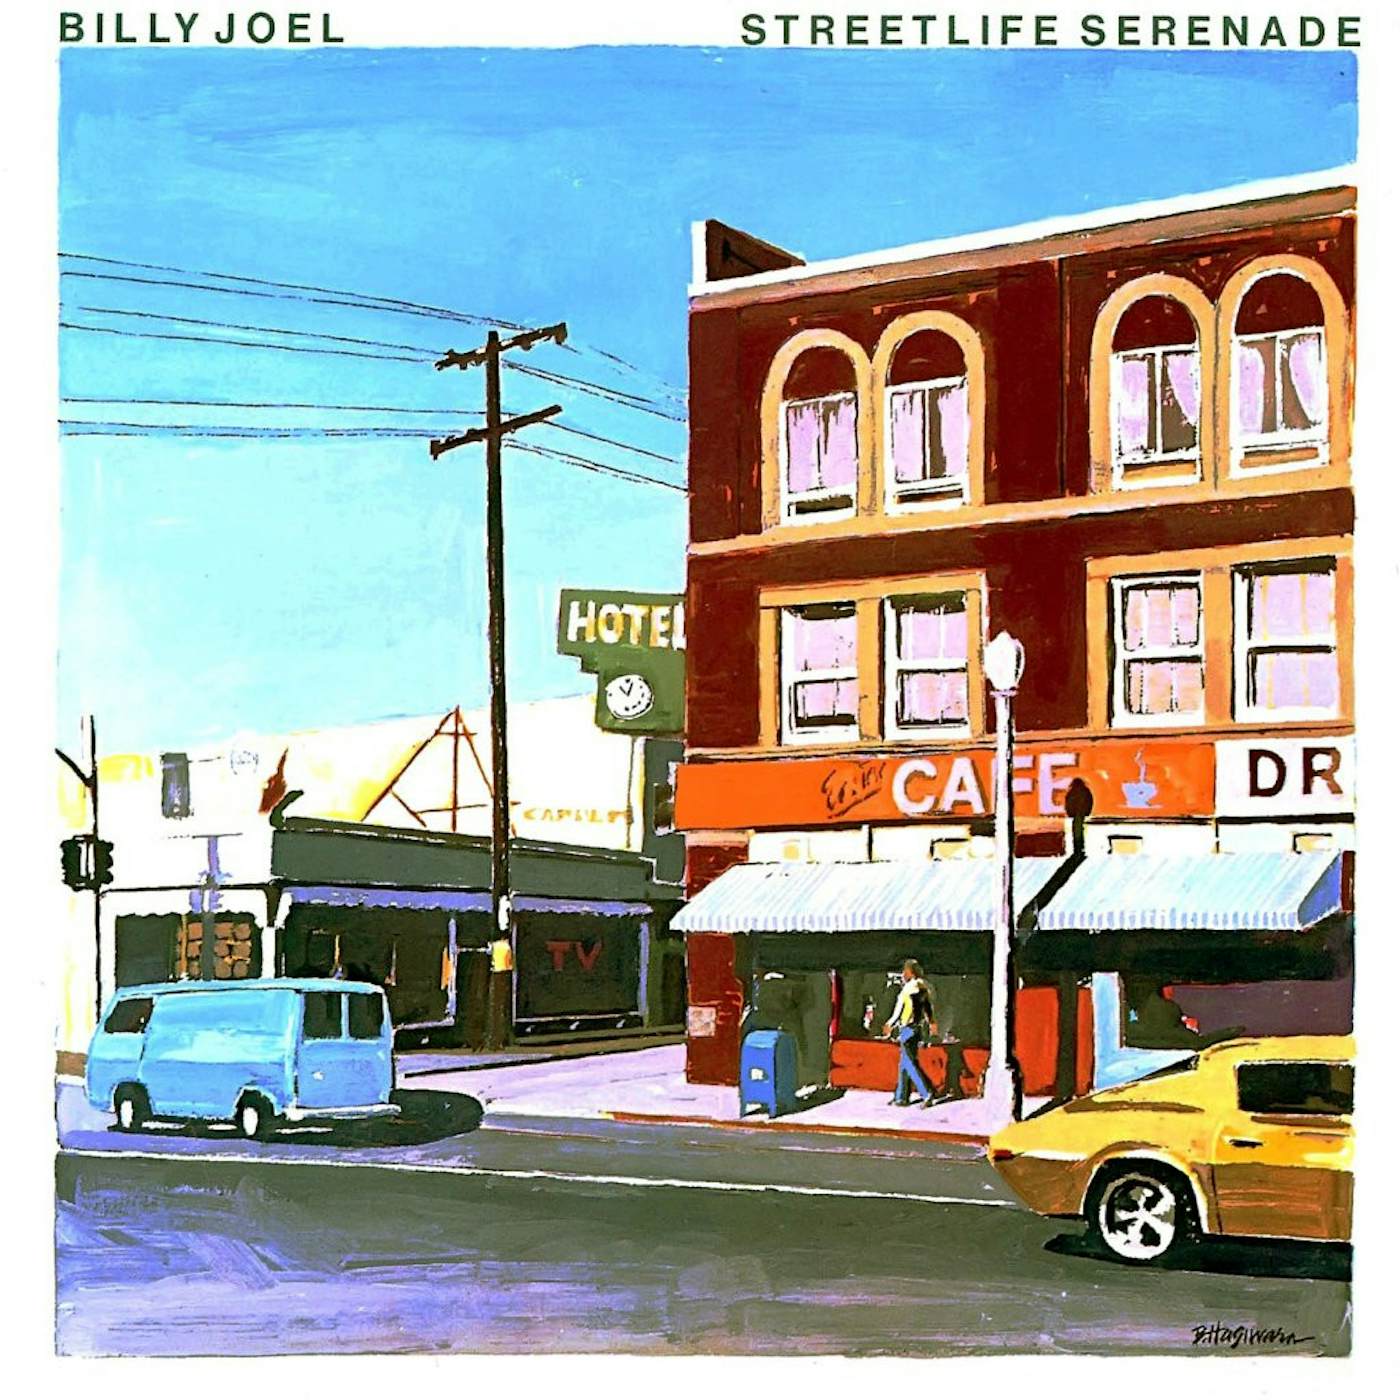 Billy Joel Streetlife Serenade Vinyl Record